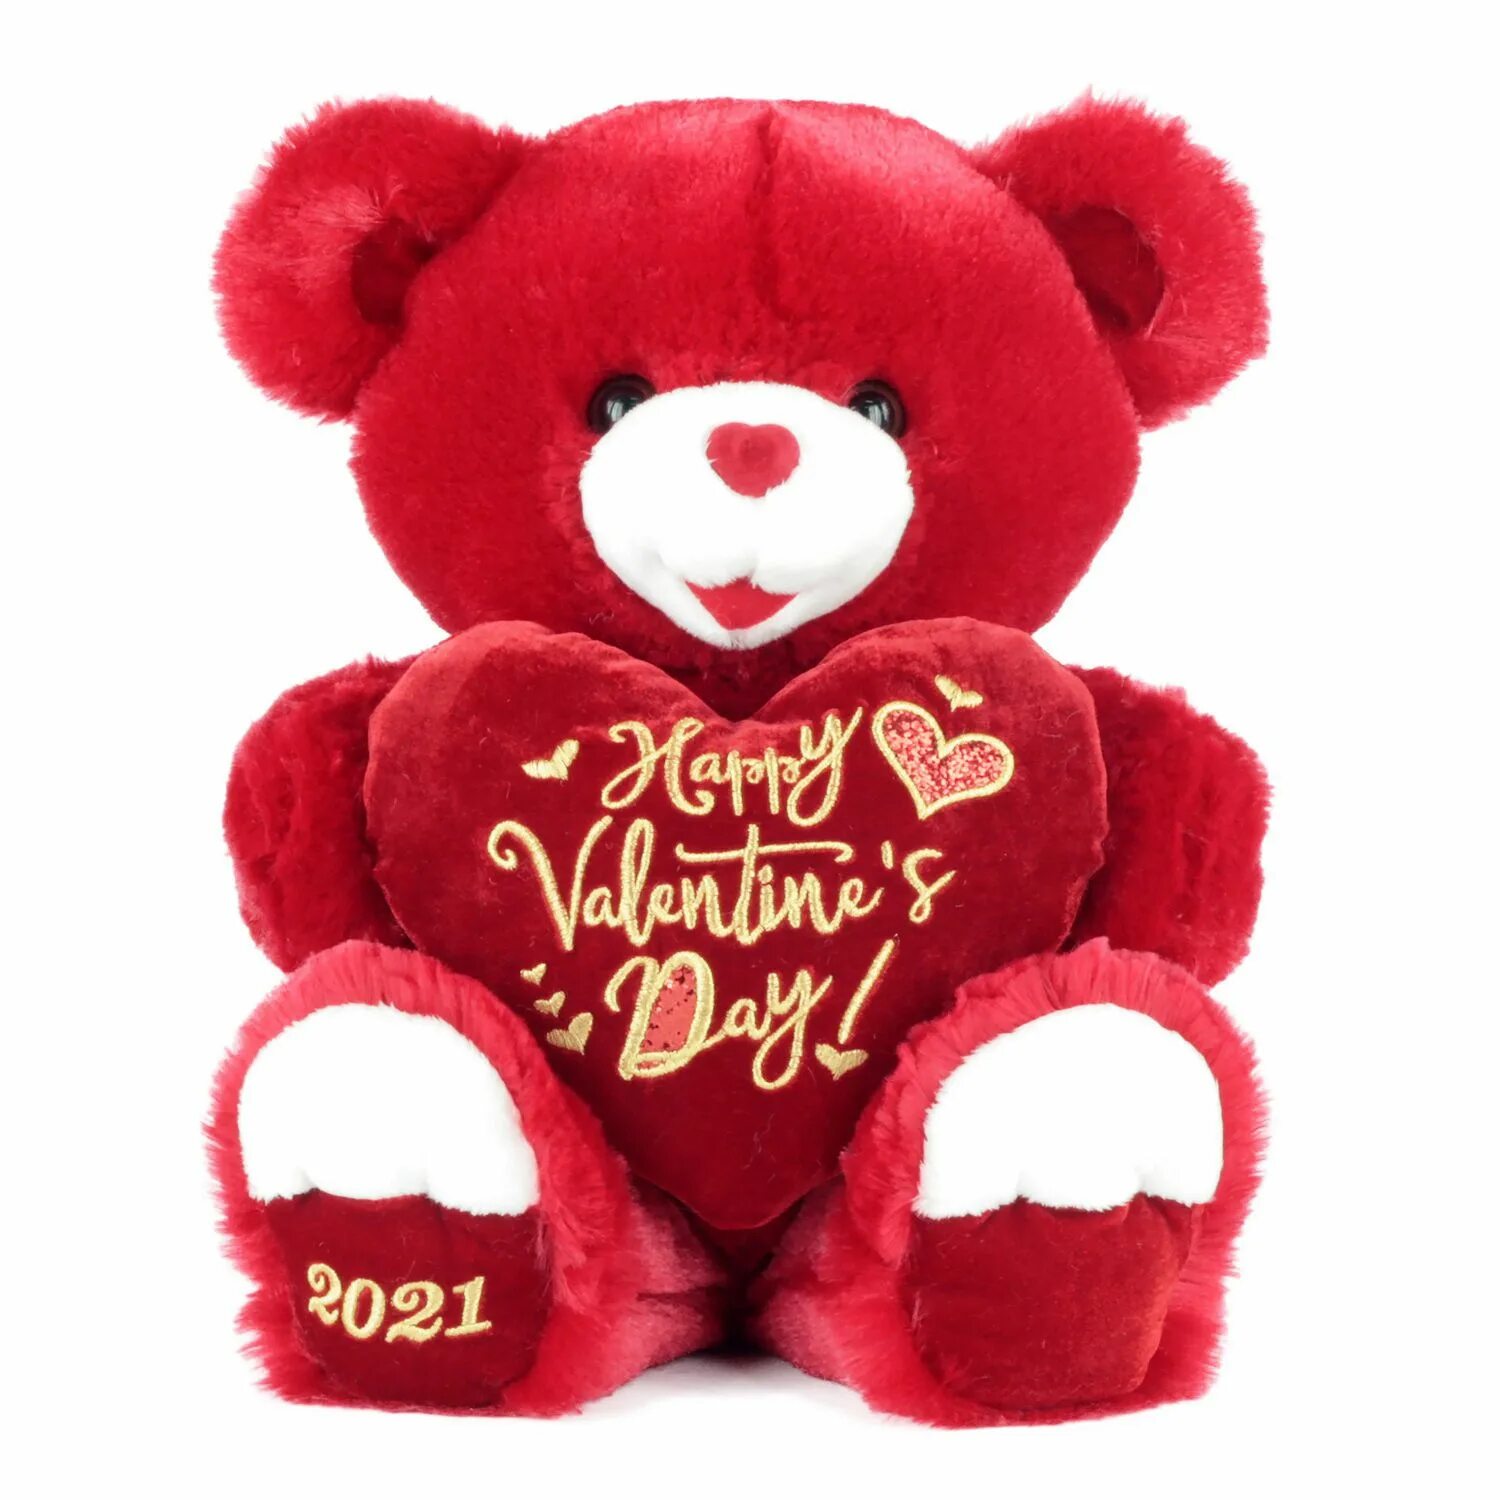 Red Teddy. Valentine's Day Teddy Bear. Red Teddy Ball.